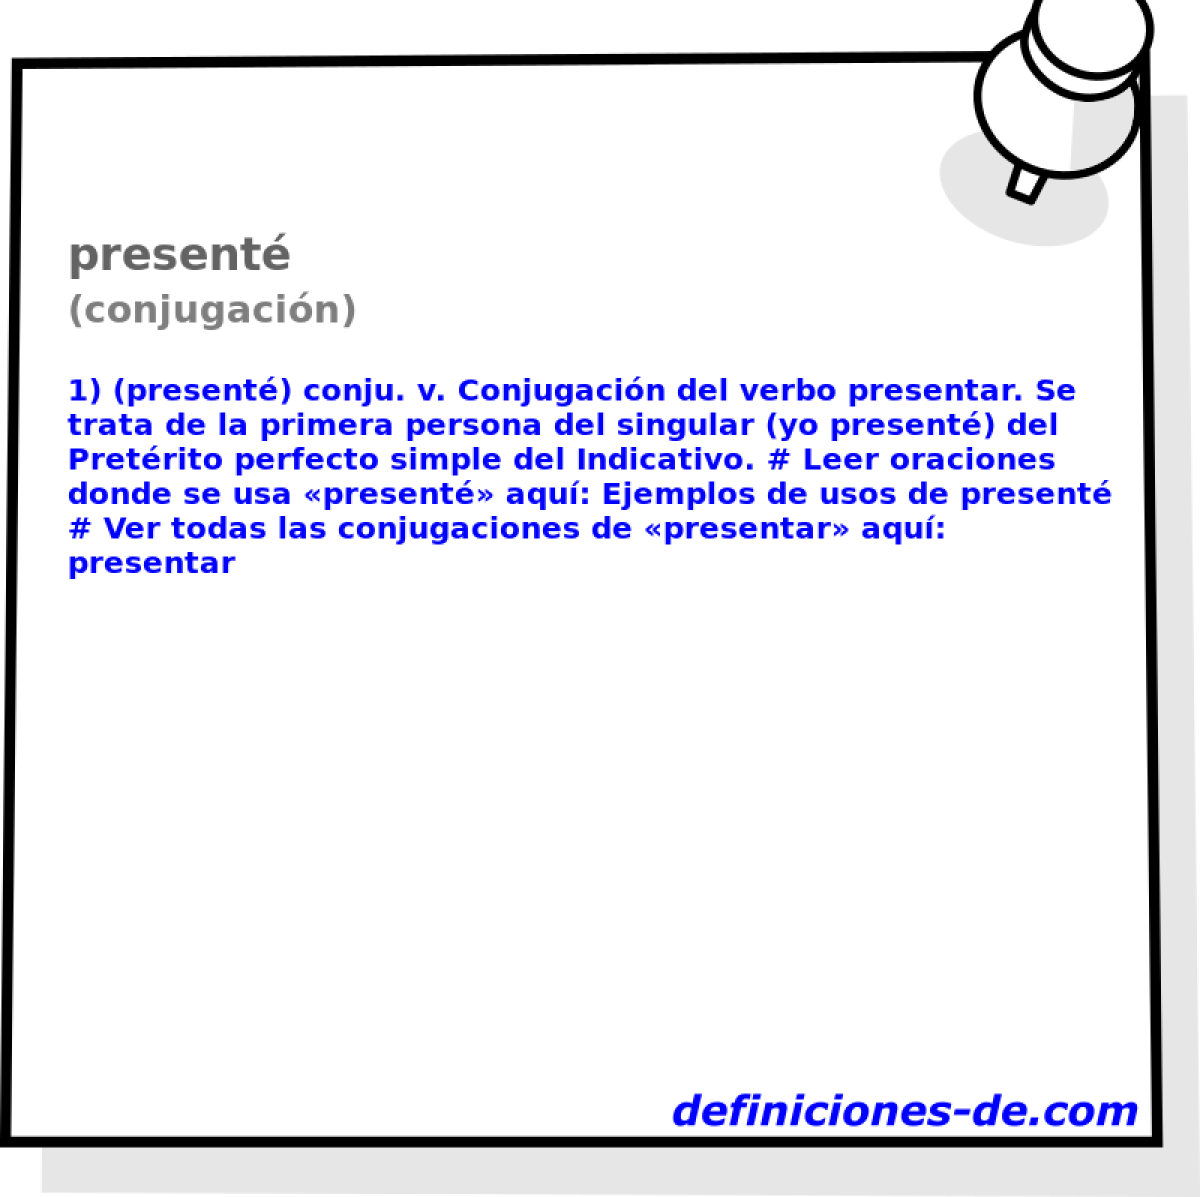 present (conjugacin)